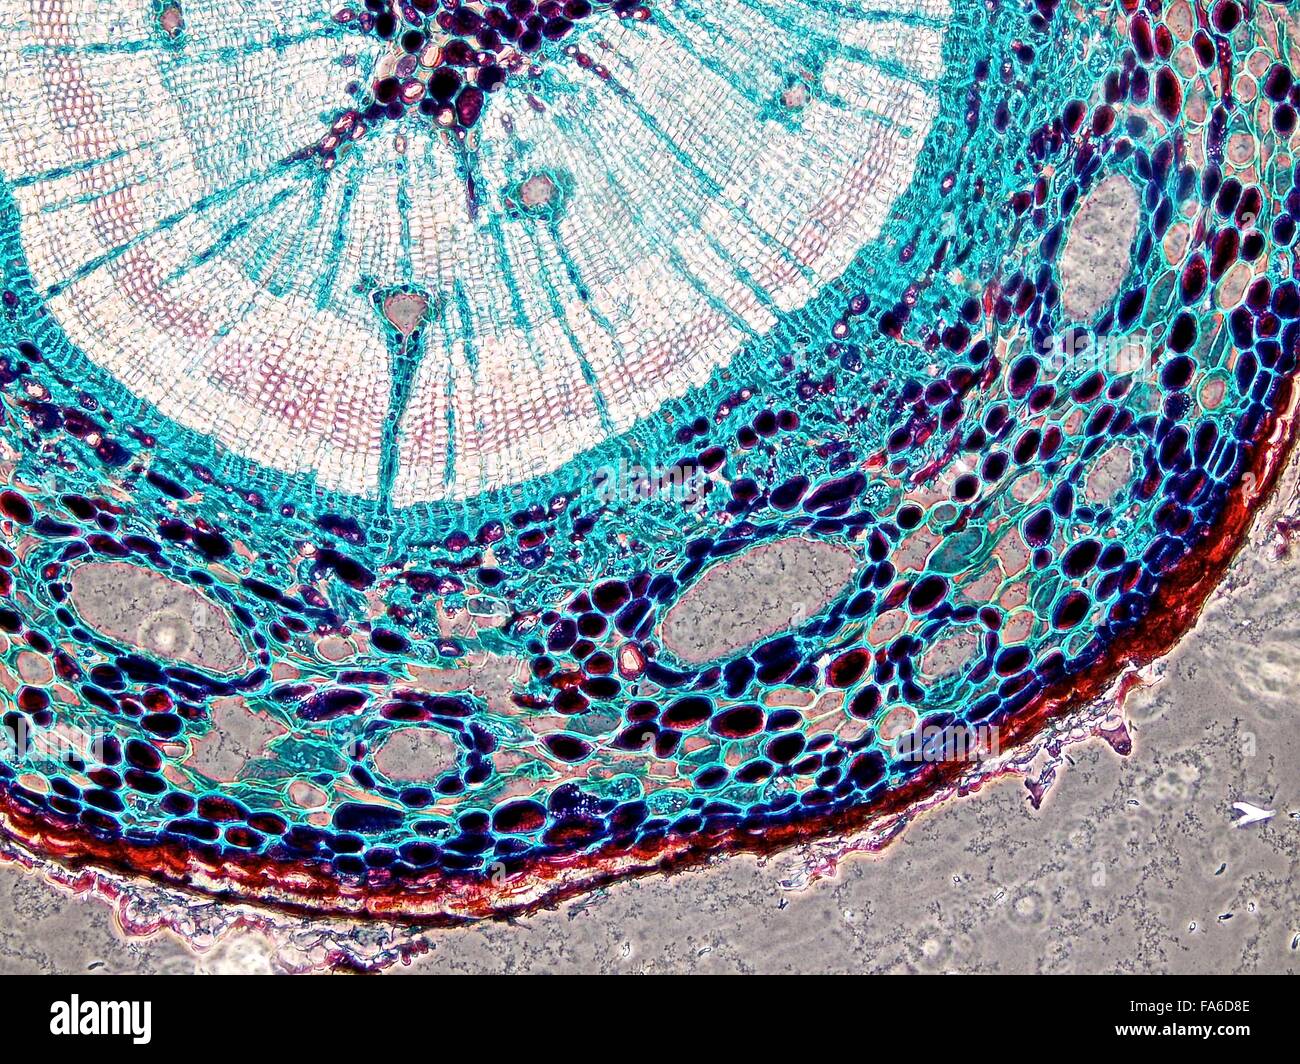 La beauté de la biologie sous microscope électronique Banque D'Images